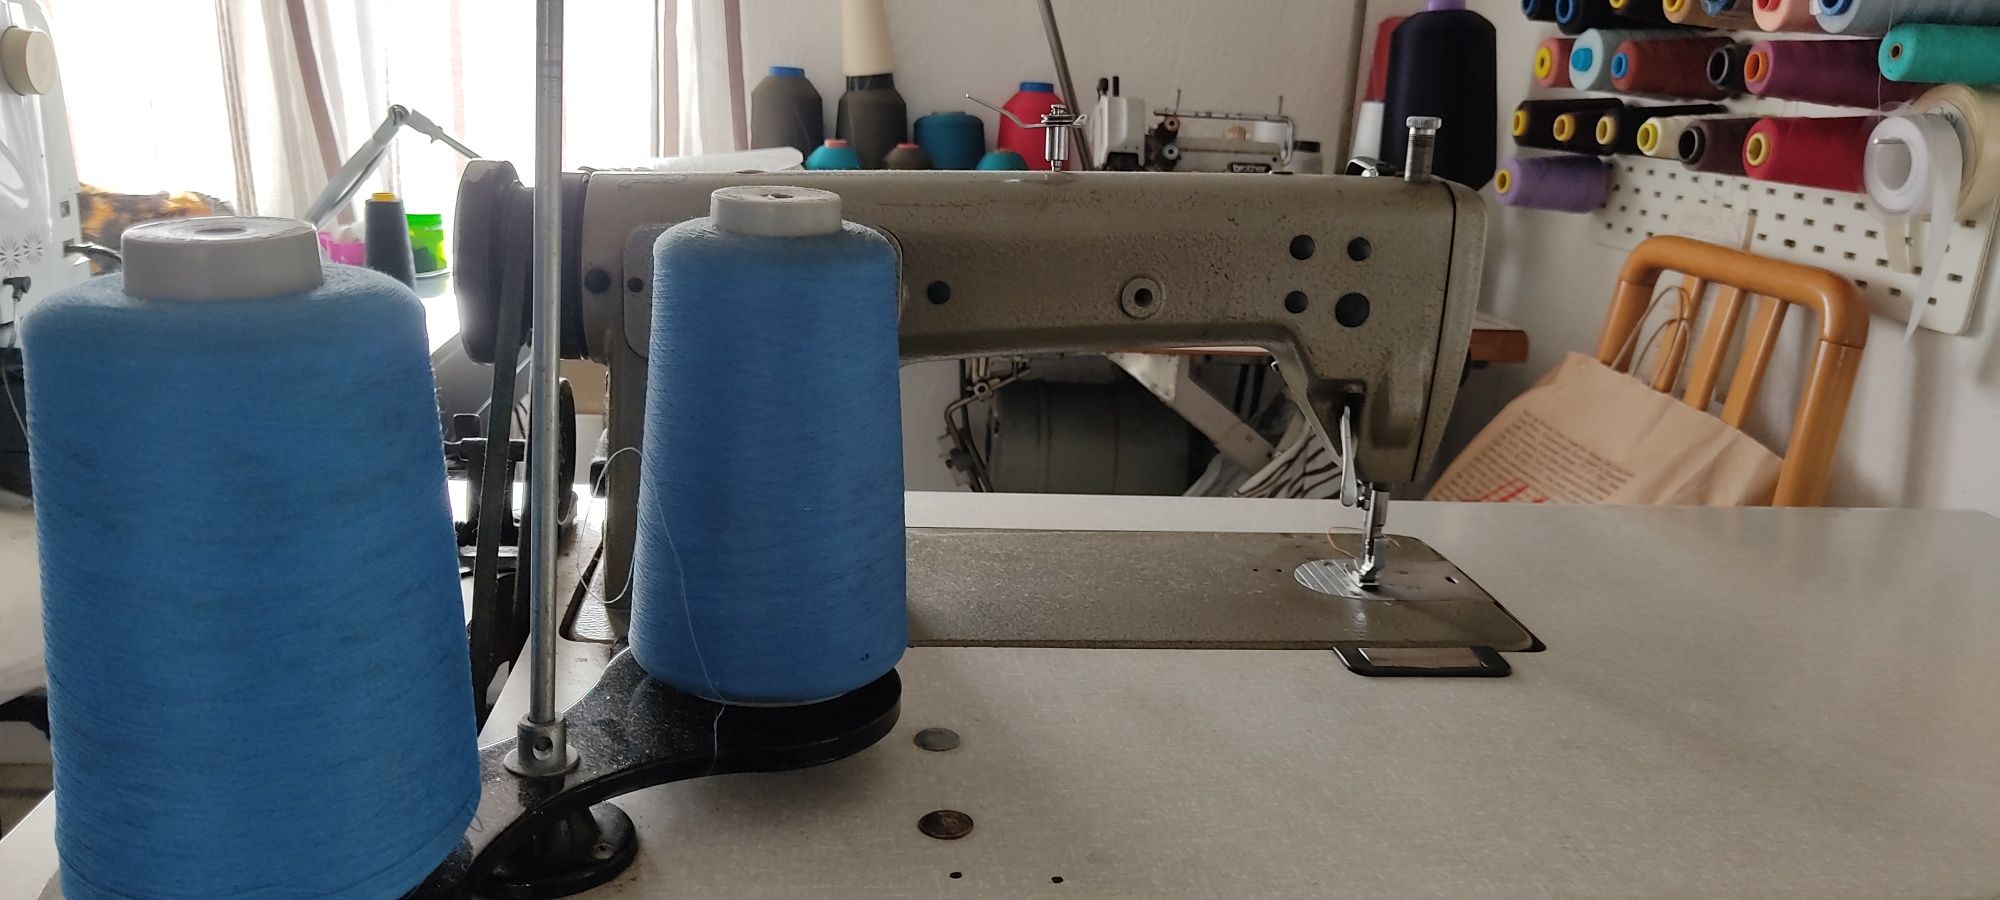 Máquina de costura industrial ponto corrido